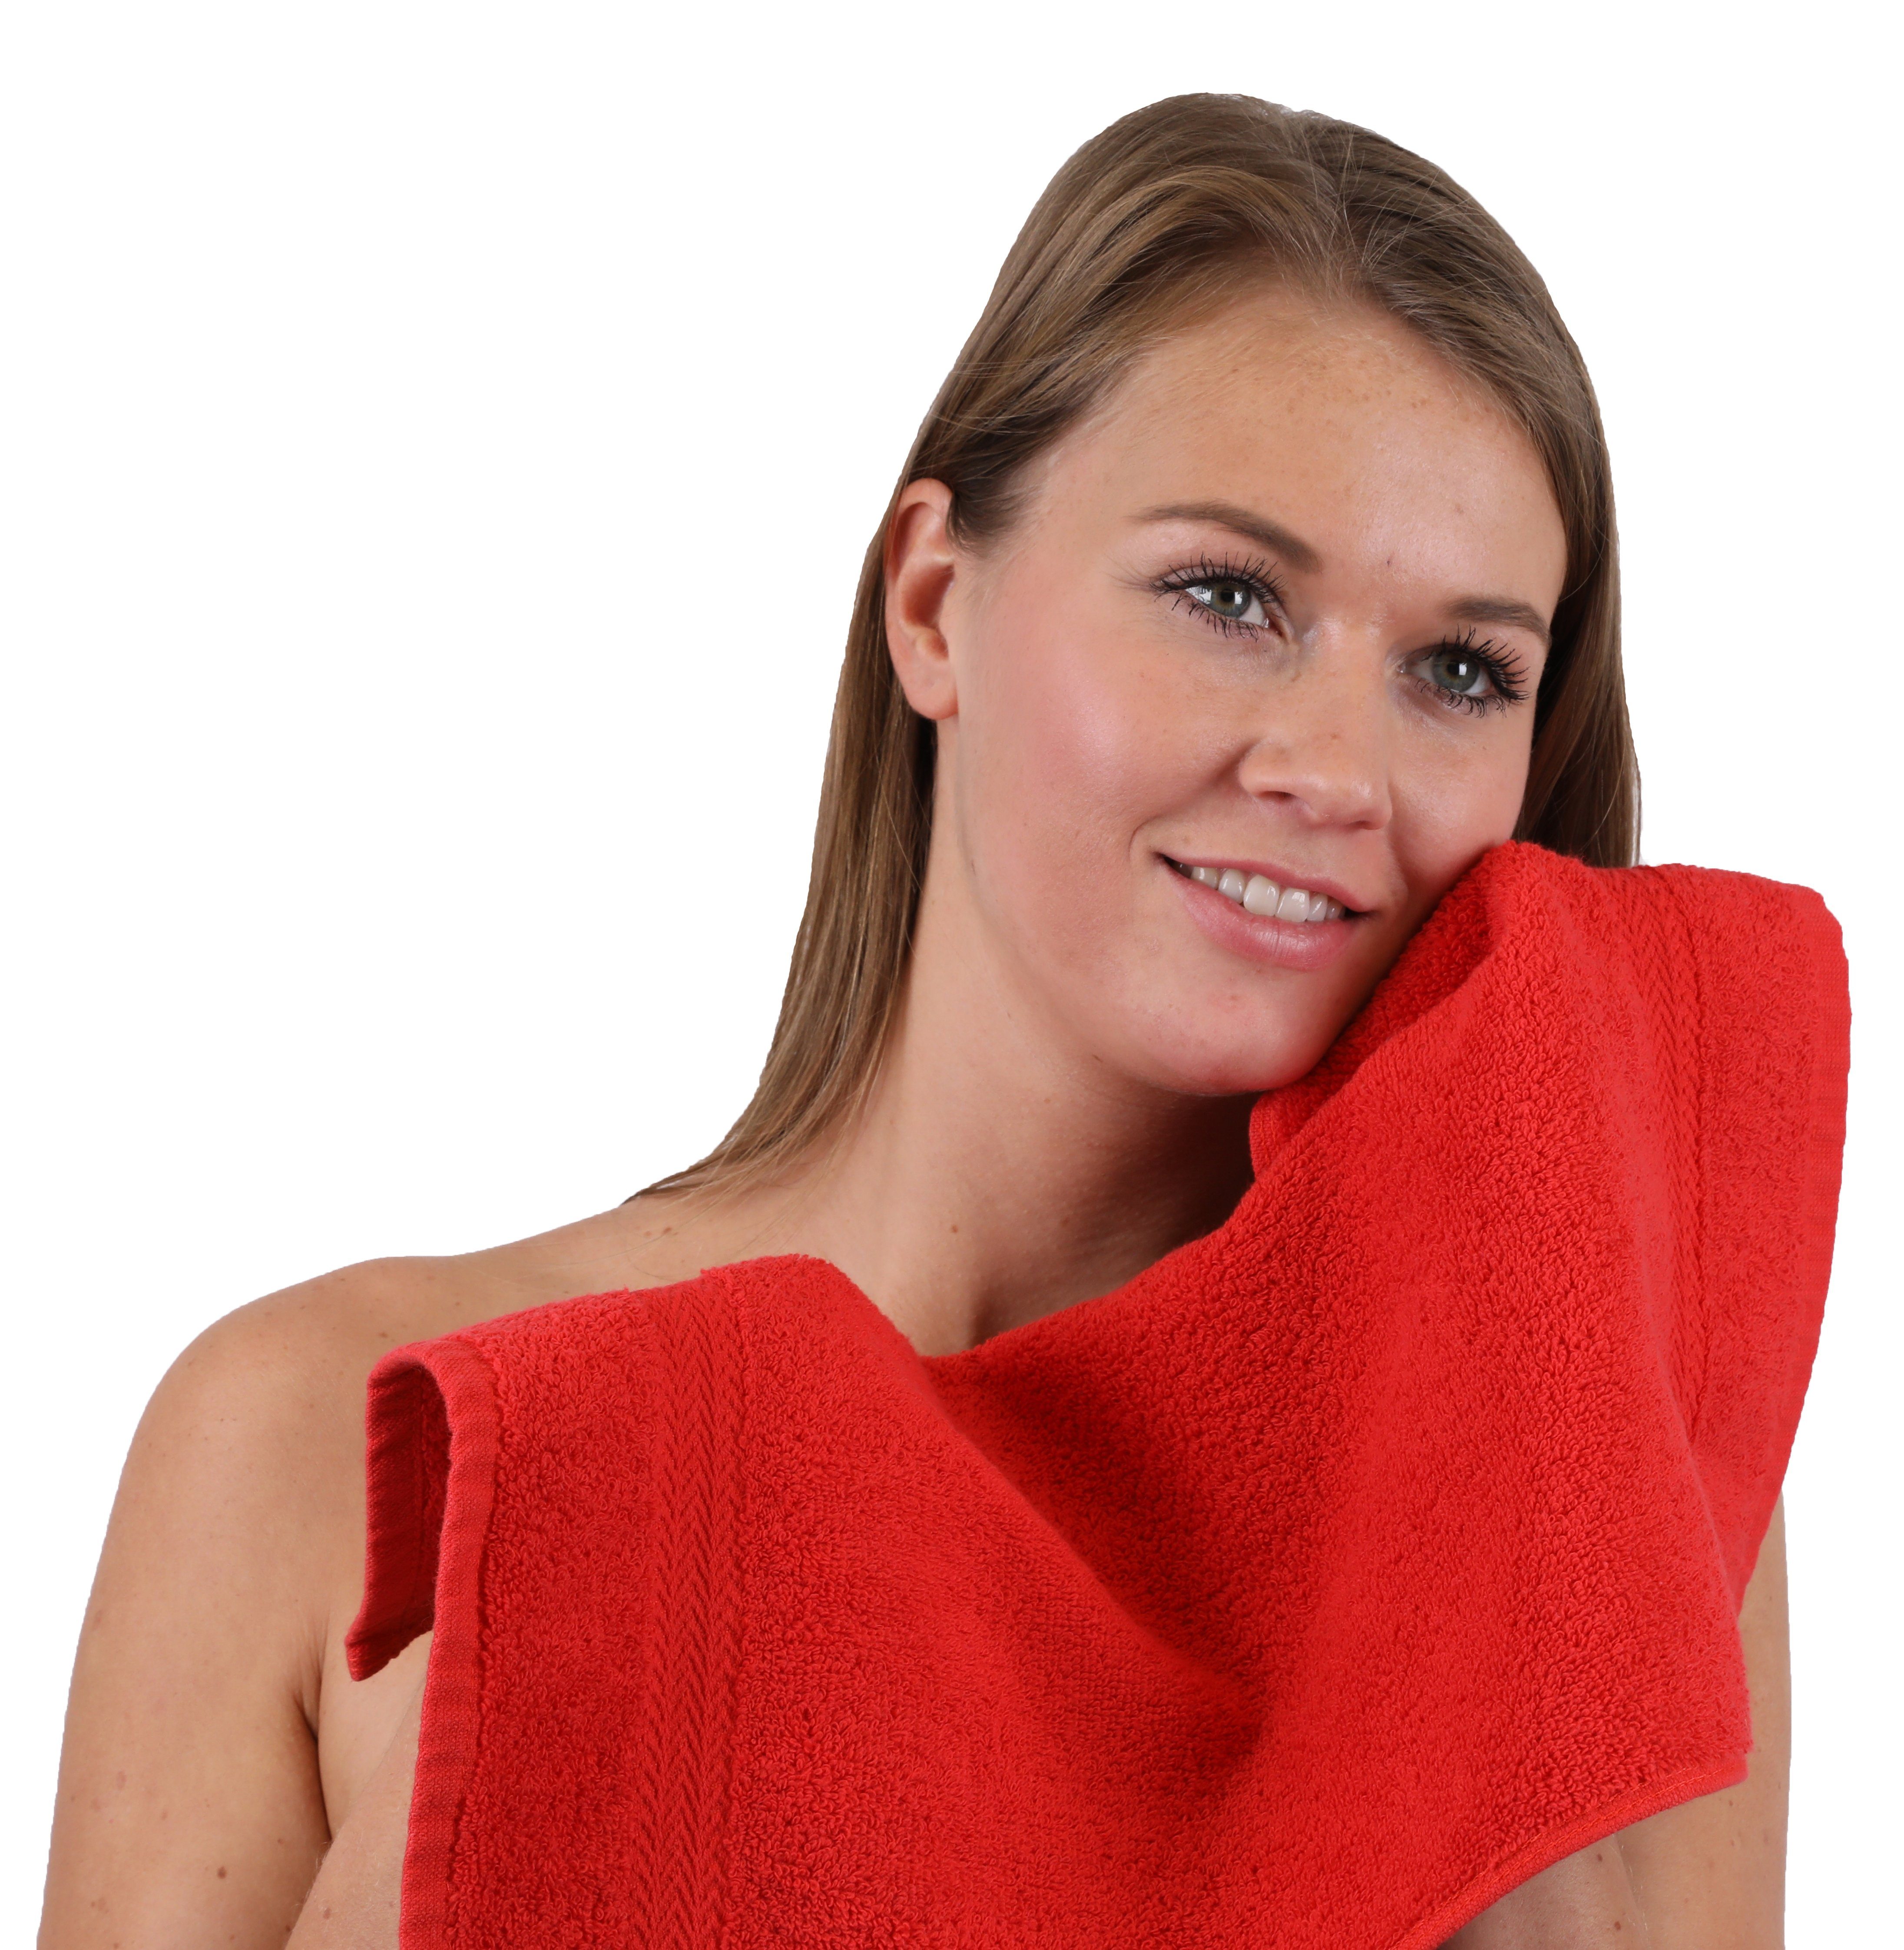 Premium Rot Handtuch Set 10-TLG. (10-tlg) Türkis, Handtuch-Set 100% Betz Farbe & Baumwolle,